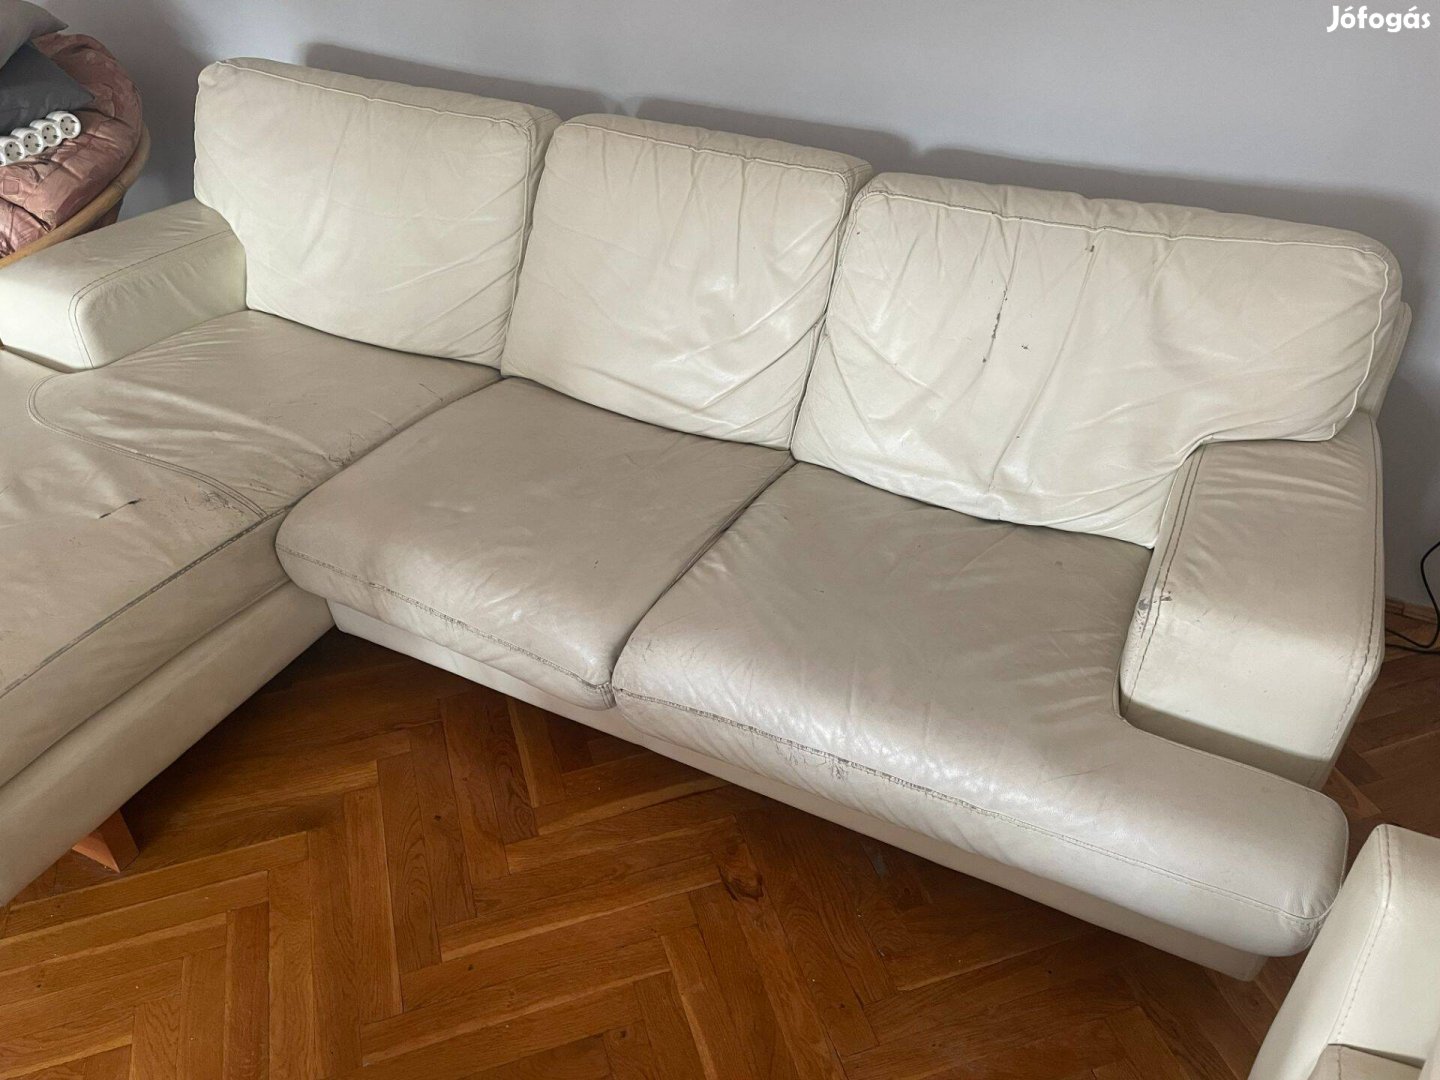 Használt fehér bőr kanapé, grátisz bőr fotel